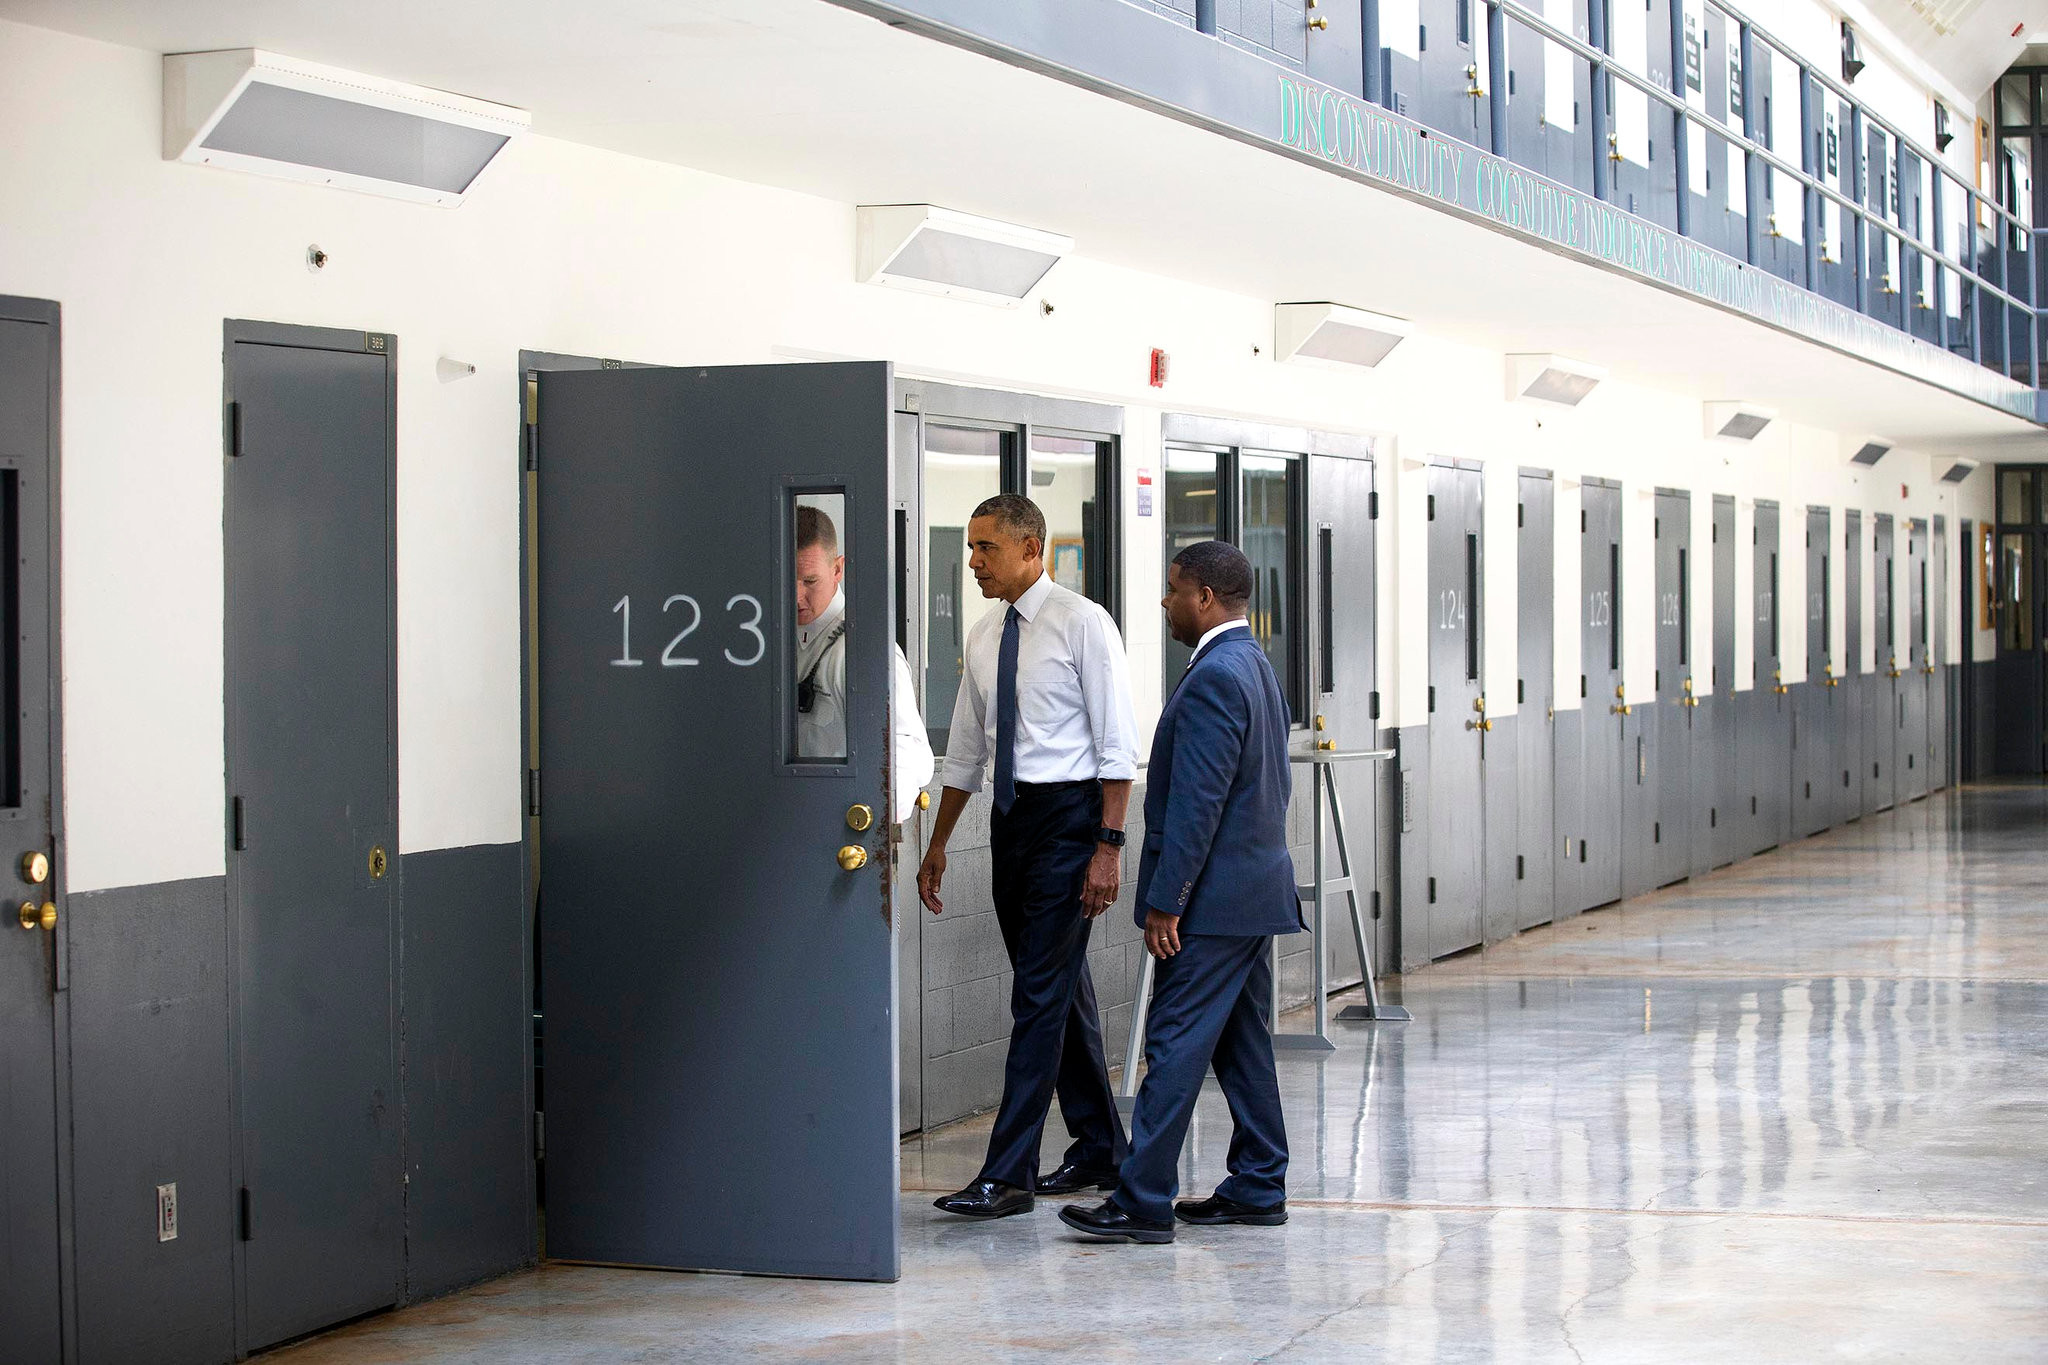 Μπαράκ Ομπάμα: Ο πρώτος εν ενεργεία πρόεδρος των ΗΠΑ που επισκέπτεται φυλακή